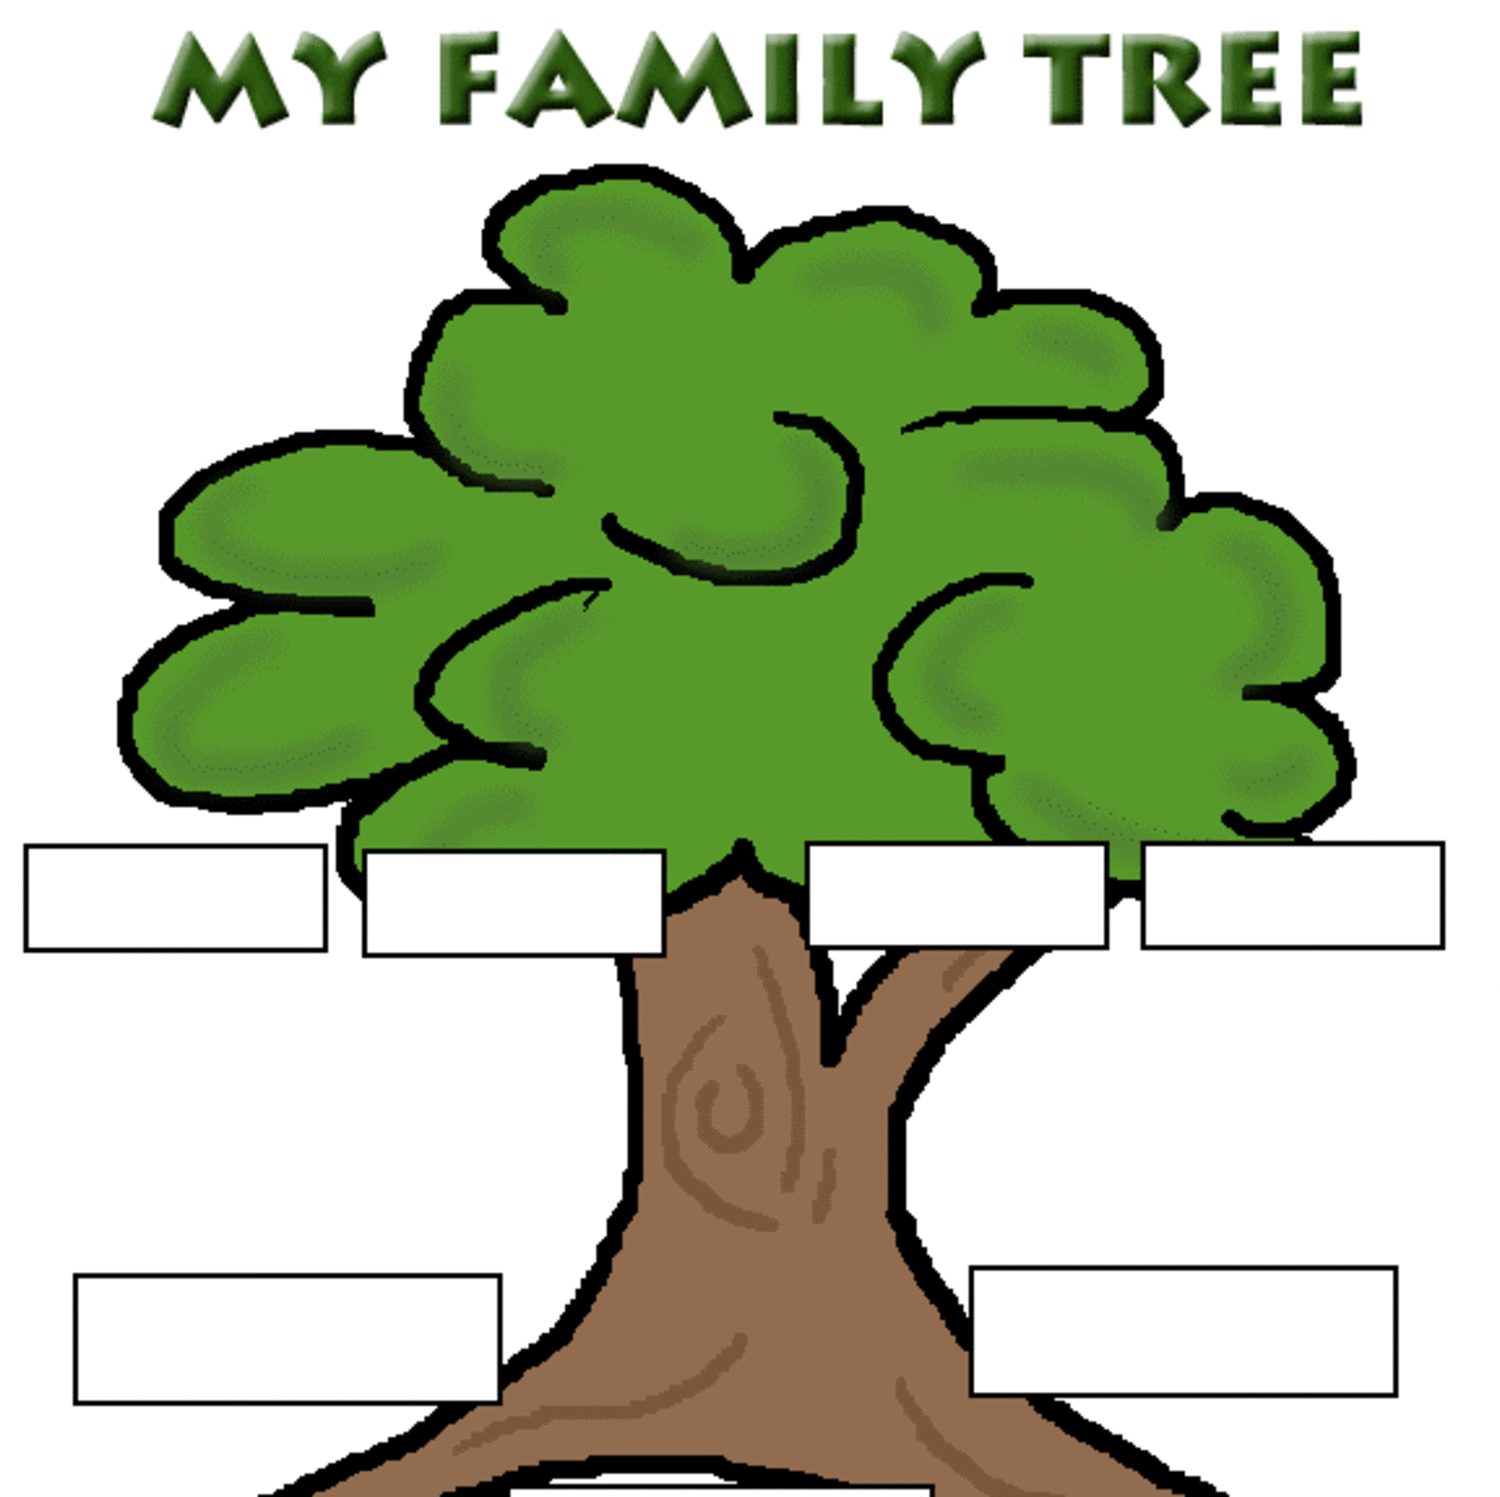 Tree на русском языке. Дерево слов. Дерево класса. Дерево семья слов. Макет дерева с однокоренными словами.